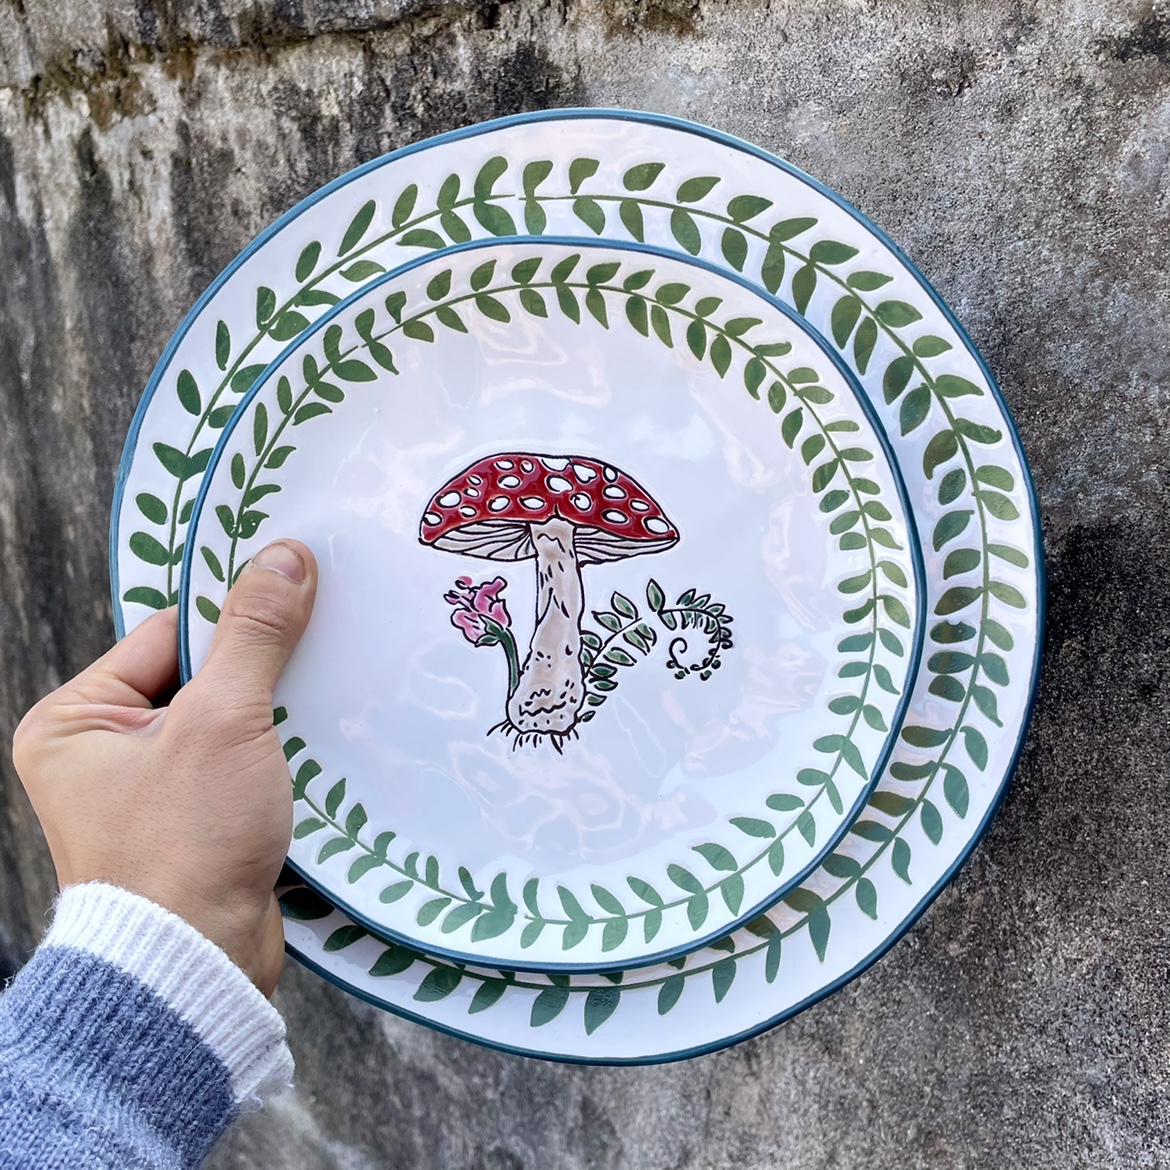 浮雕叶子边蘑菇陶瓷大小盘子家用菜盘摆盘甜点品盘手绘牛排盘微瑕